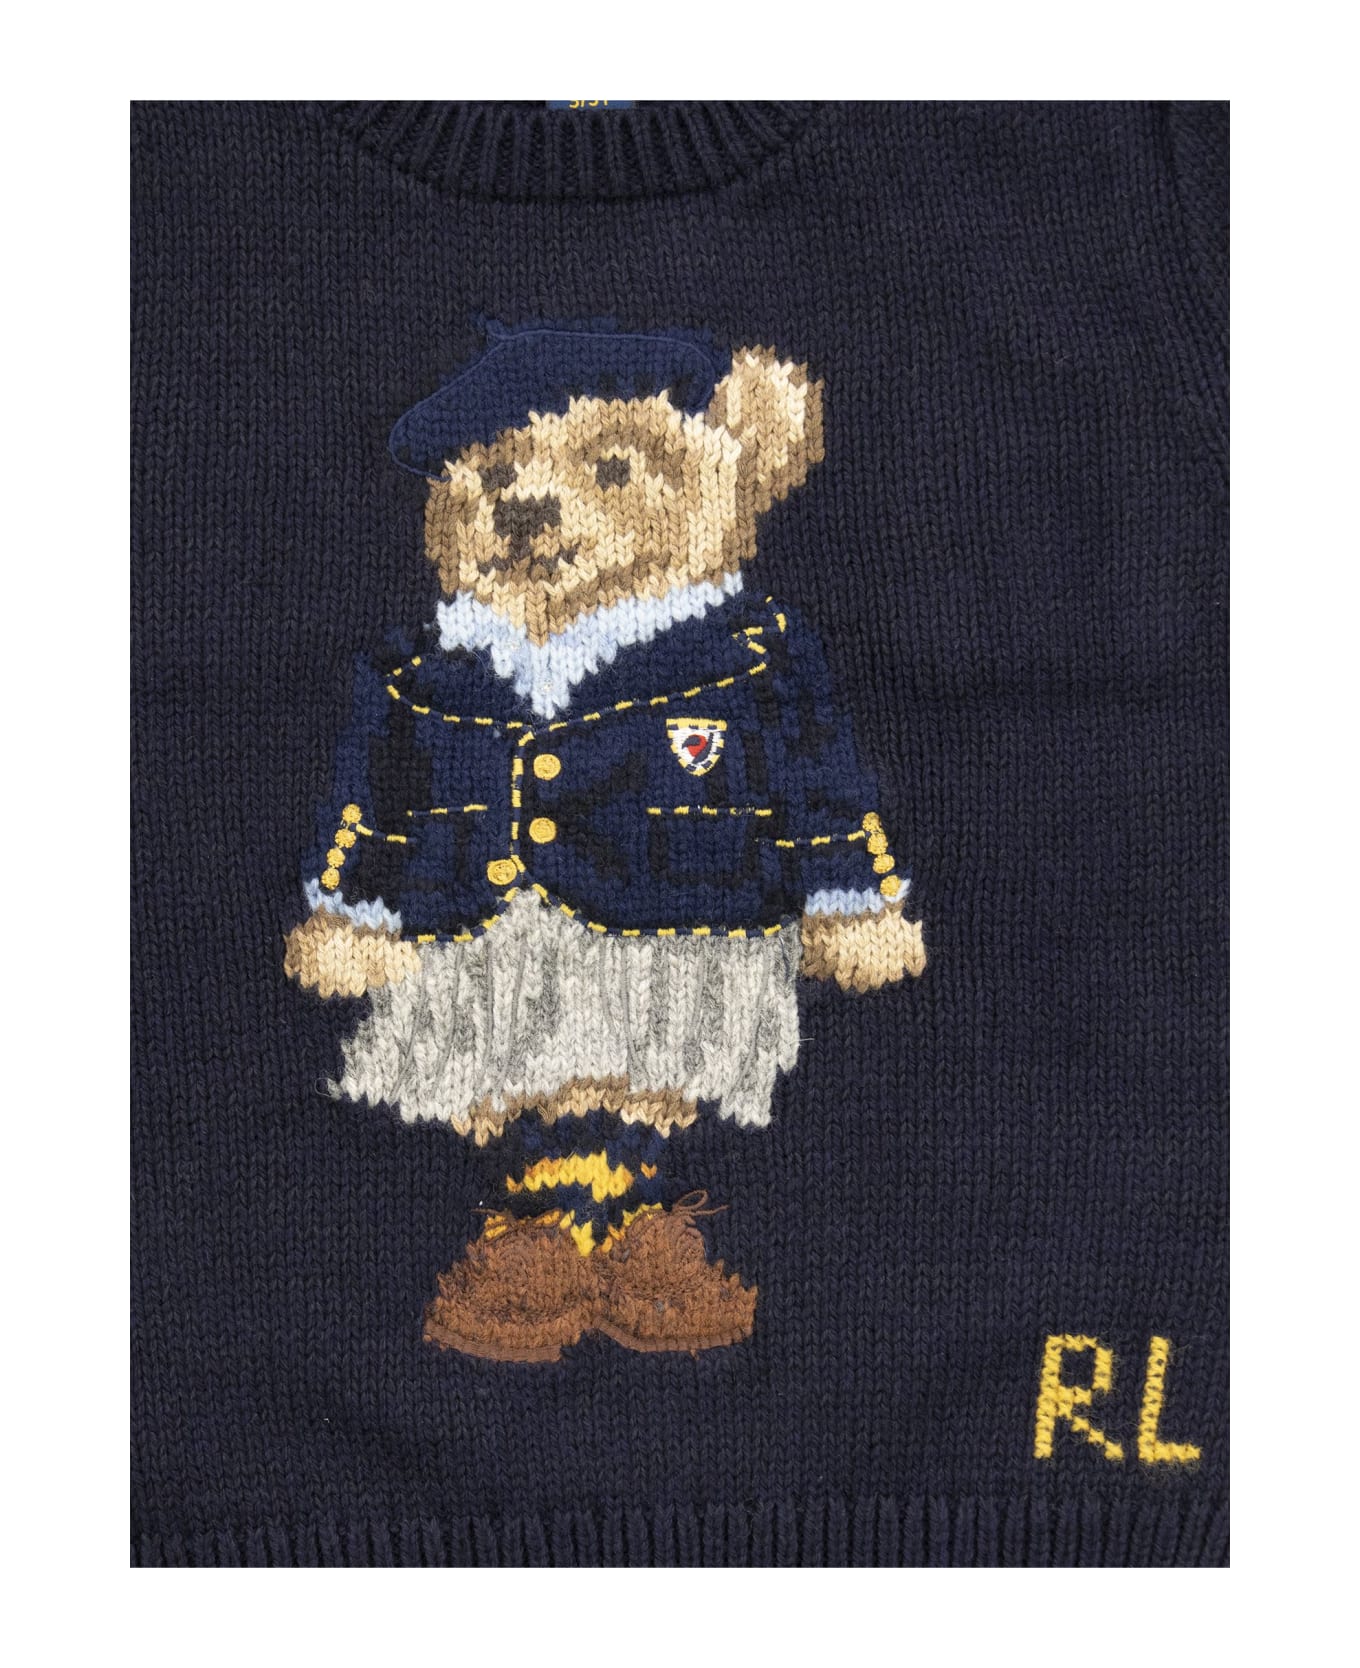 Polo Ralph Lauren Cotton-blend Jersey Polo Bear - Navy Blue